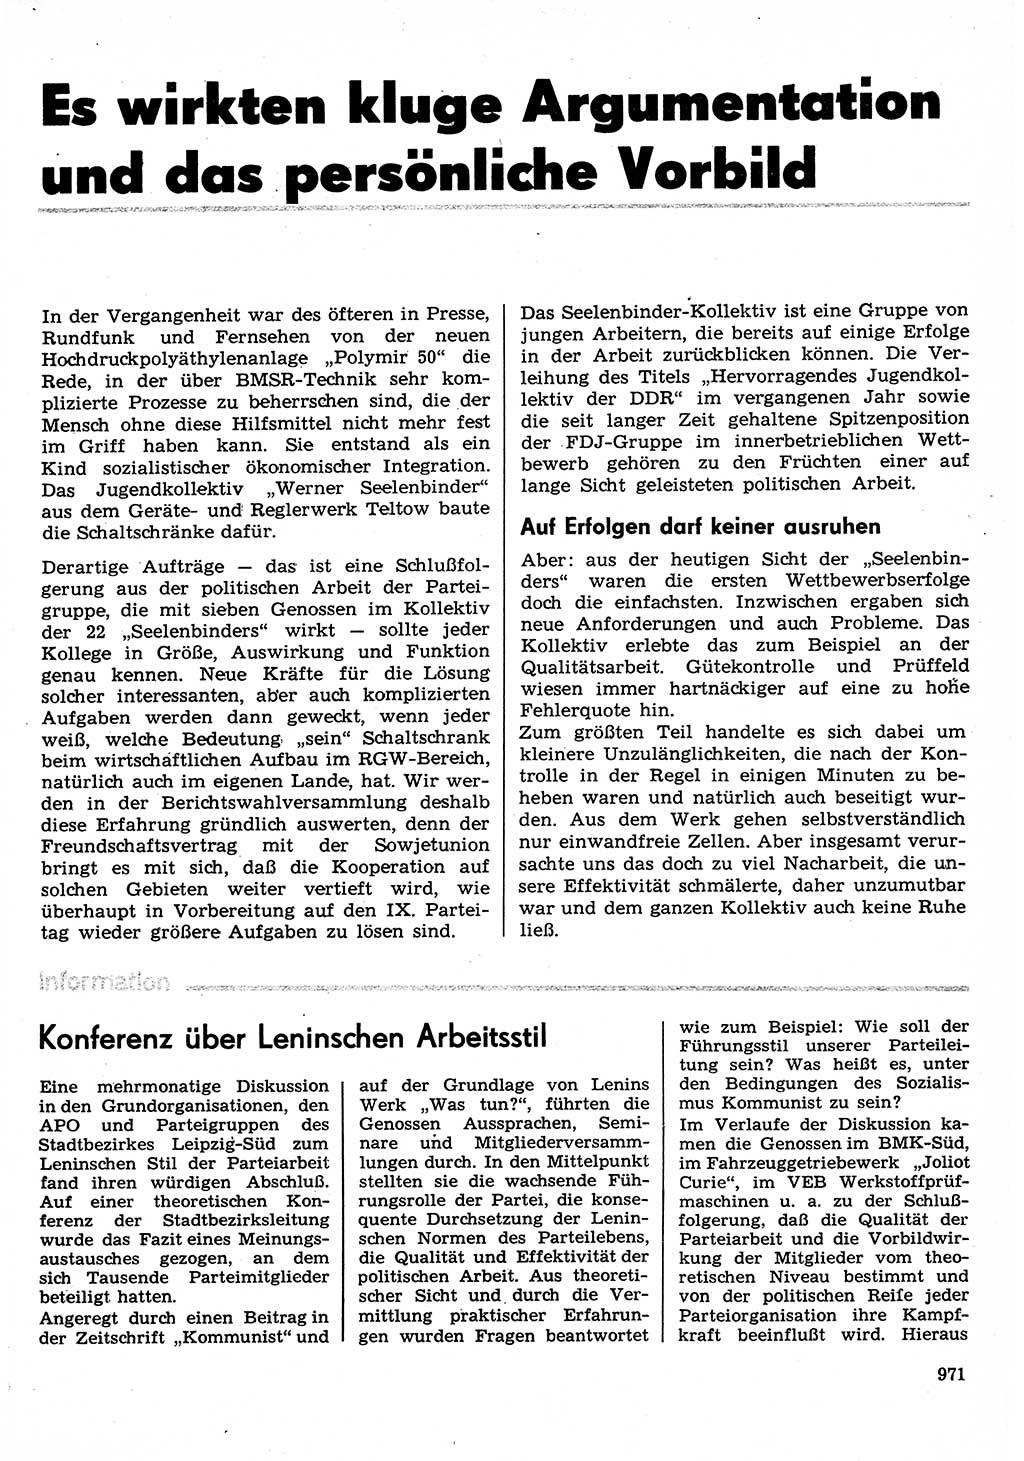 Neuer Weg (NW), Organ des Zentralkomitees (ZK) der SED (Sozialistische Einheitspartei Deutschlands) für Fragen des Parteilebens, 30. Jahrgang [Deutsche Demokratische Republik (DDR)] 1975, Seite 971 (NW ZK SED DDR 1975, S. 971)